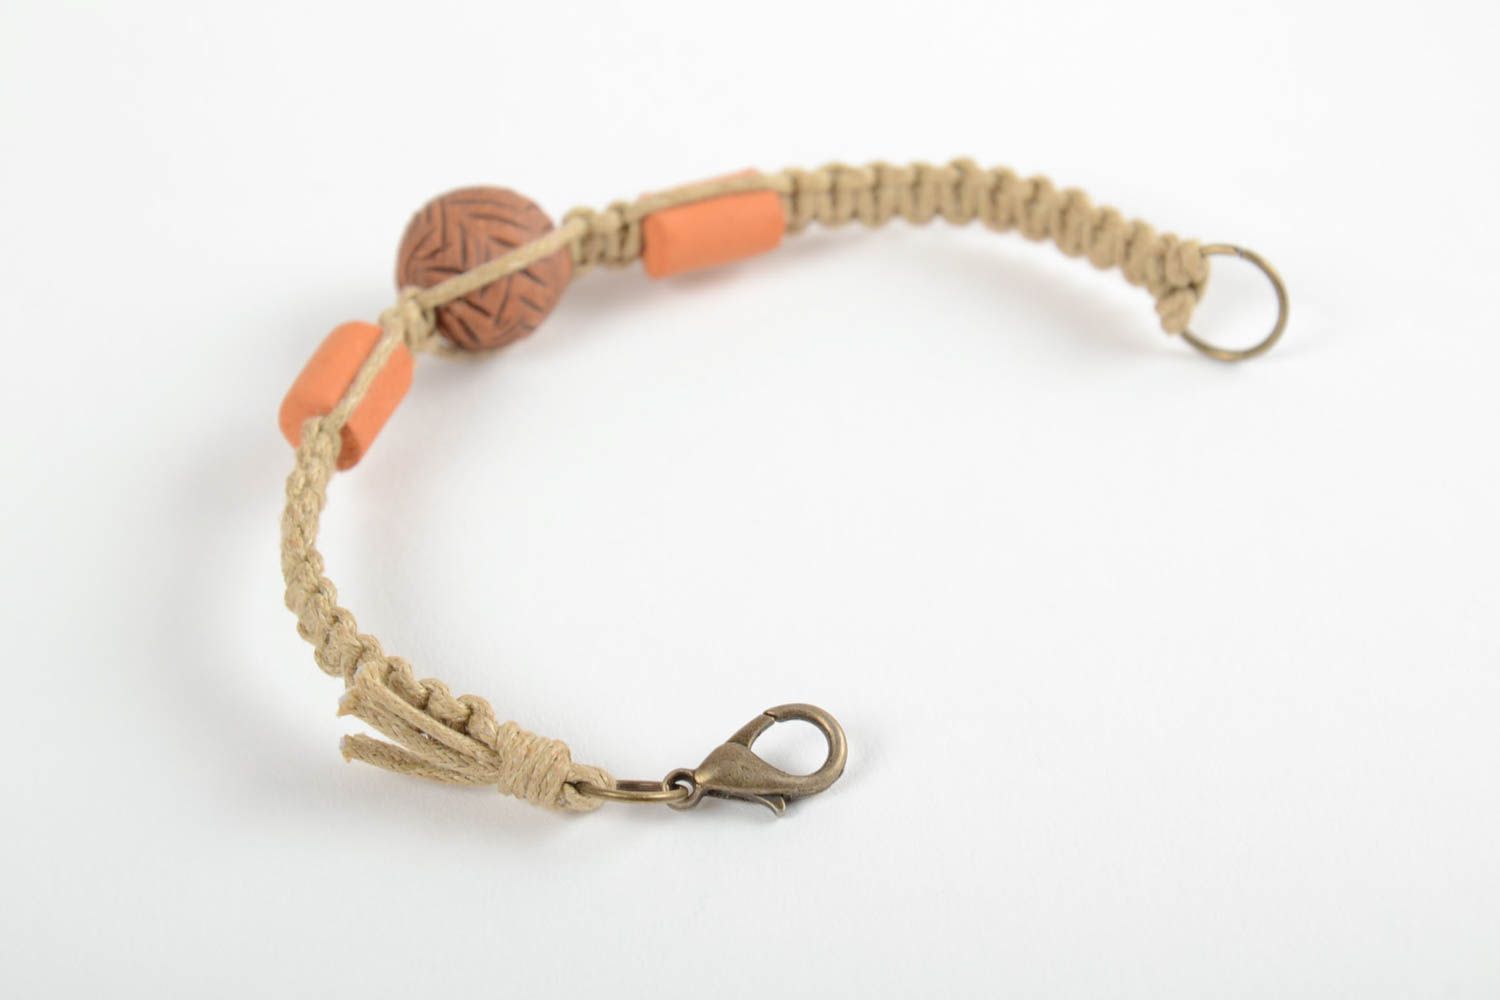 Светлый глиняный браслет ручной работы плетеный с помощью вощеного шнура фото 4